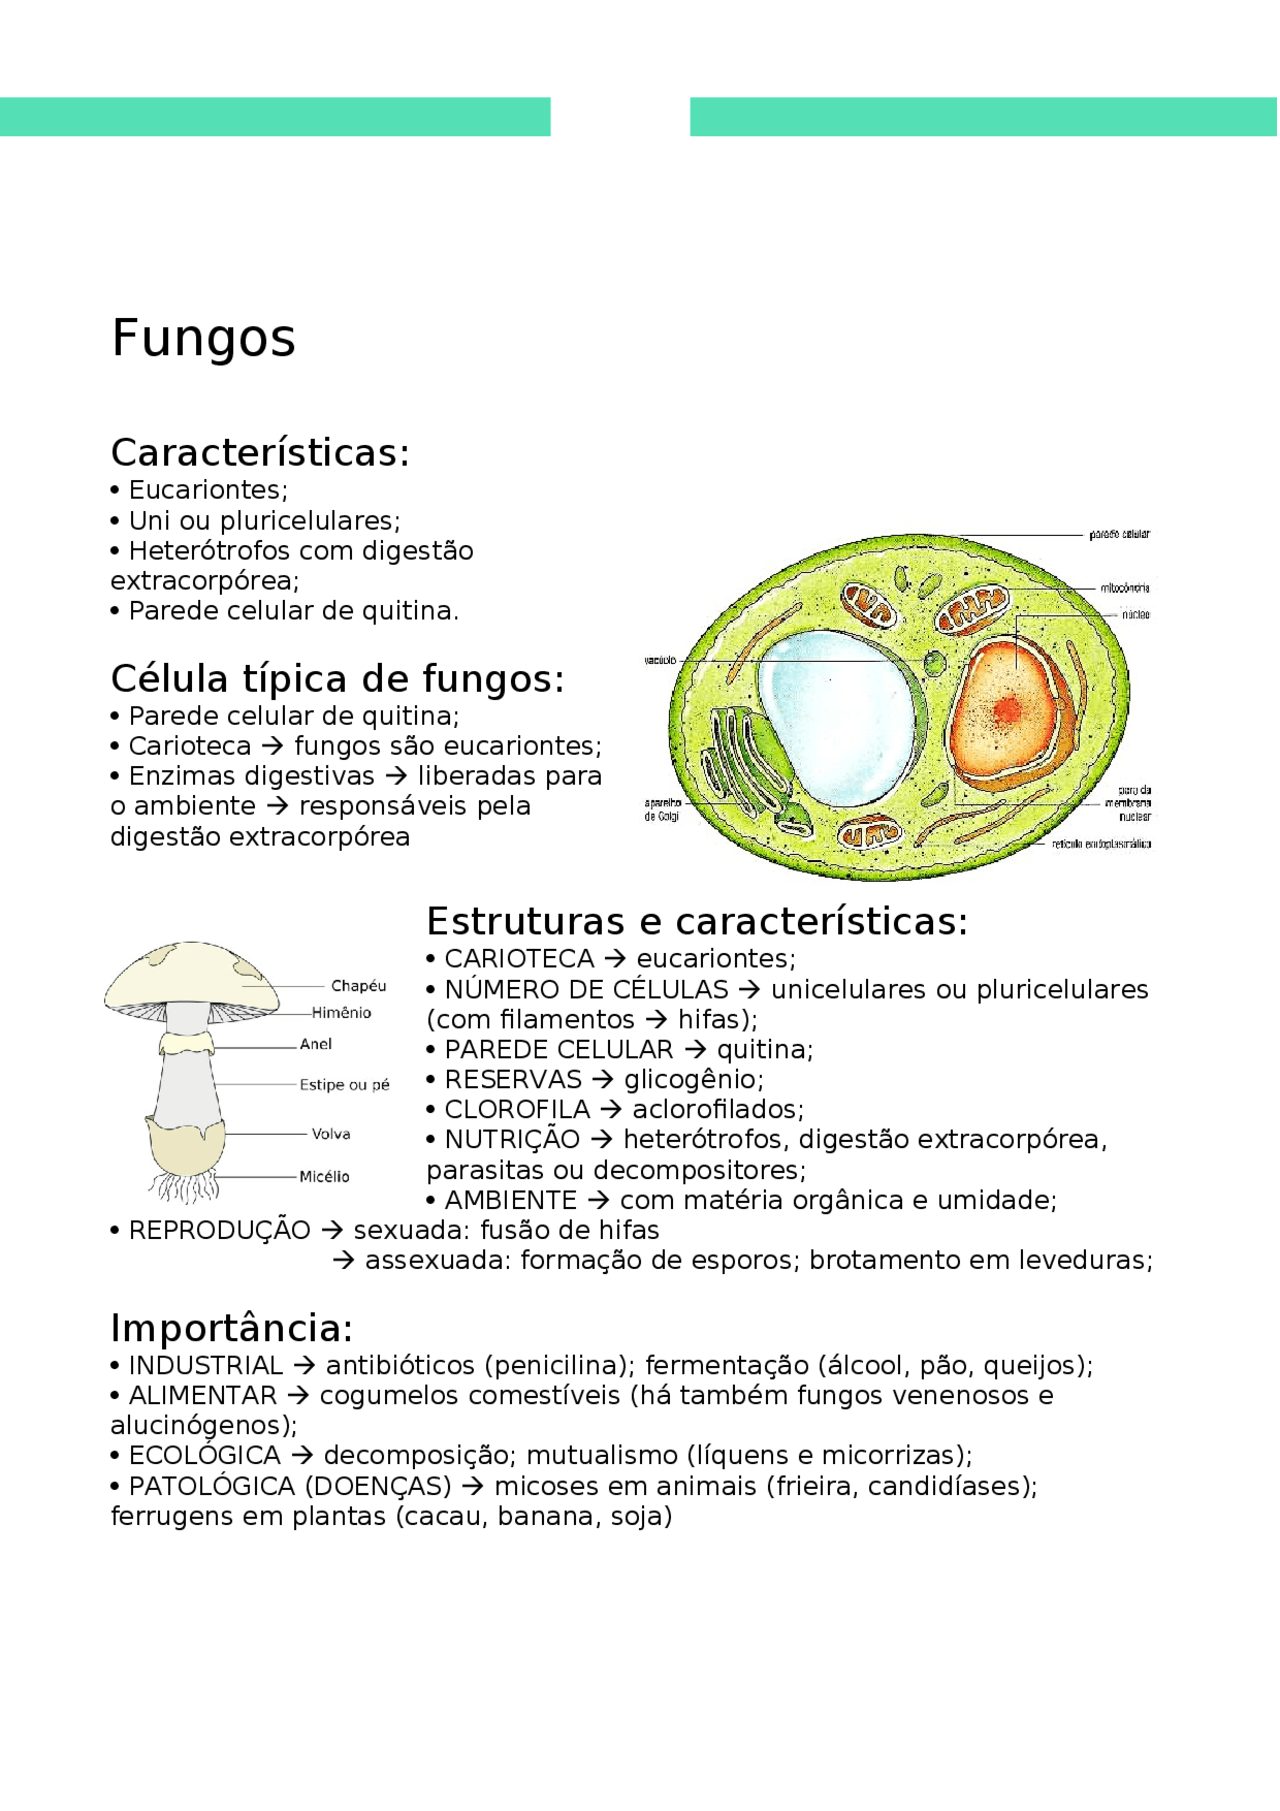 livro sobre fungos